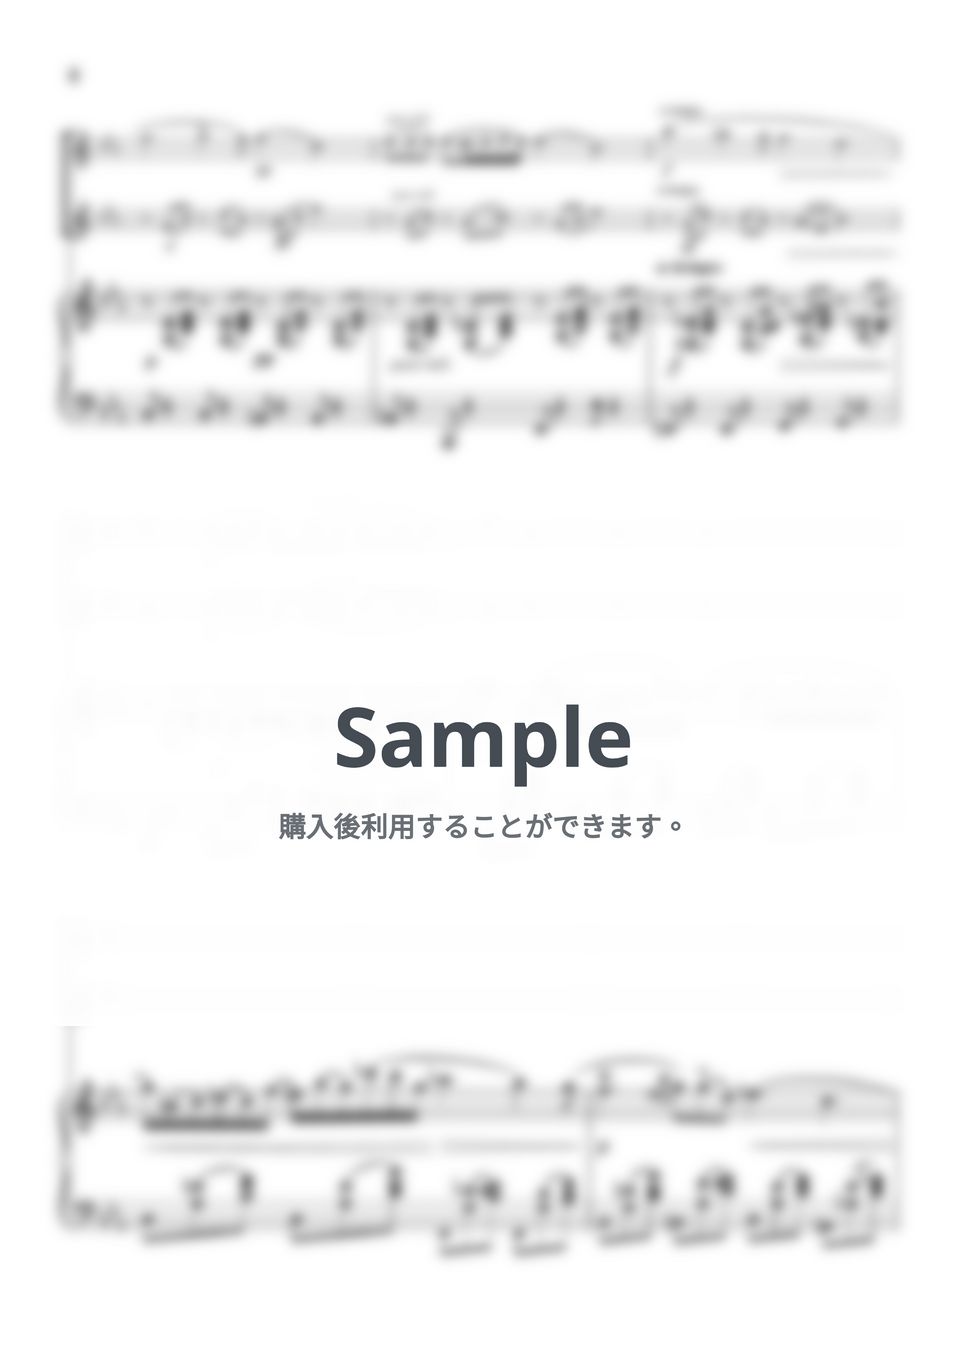 ショパン - ノクターン第2番 (ピアノトリオ/フルートデュオ) by pfkaori